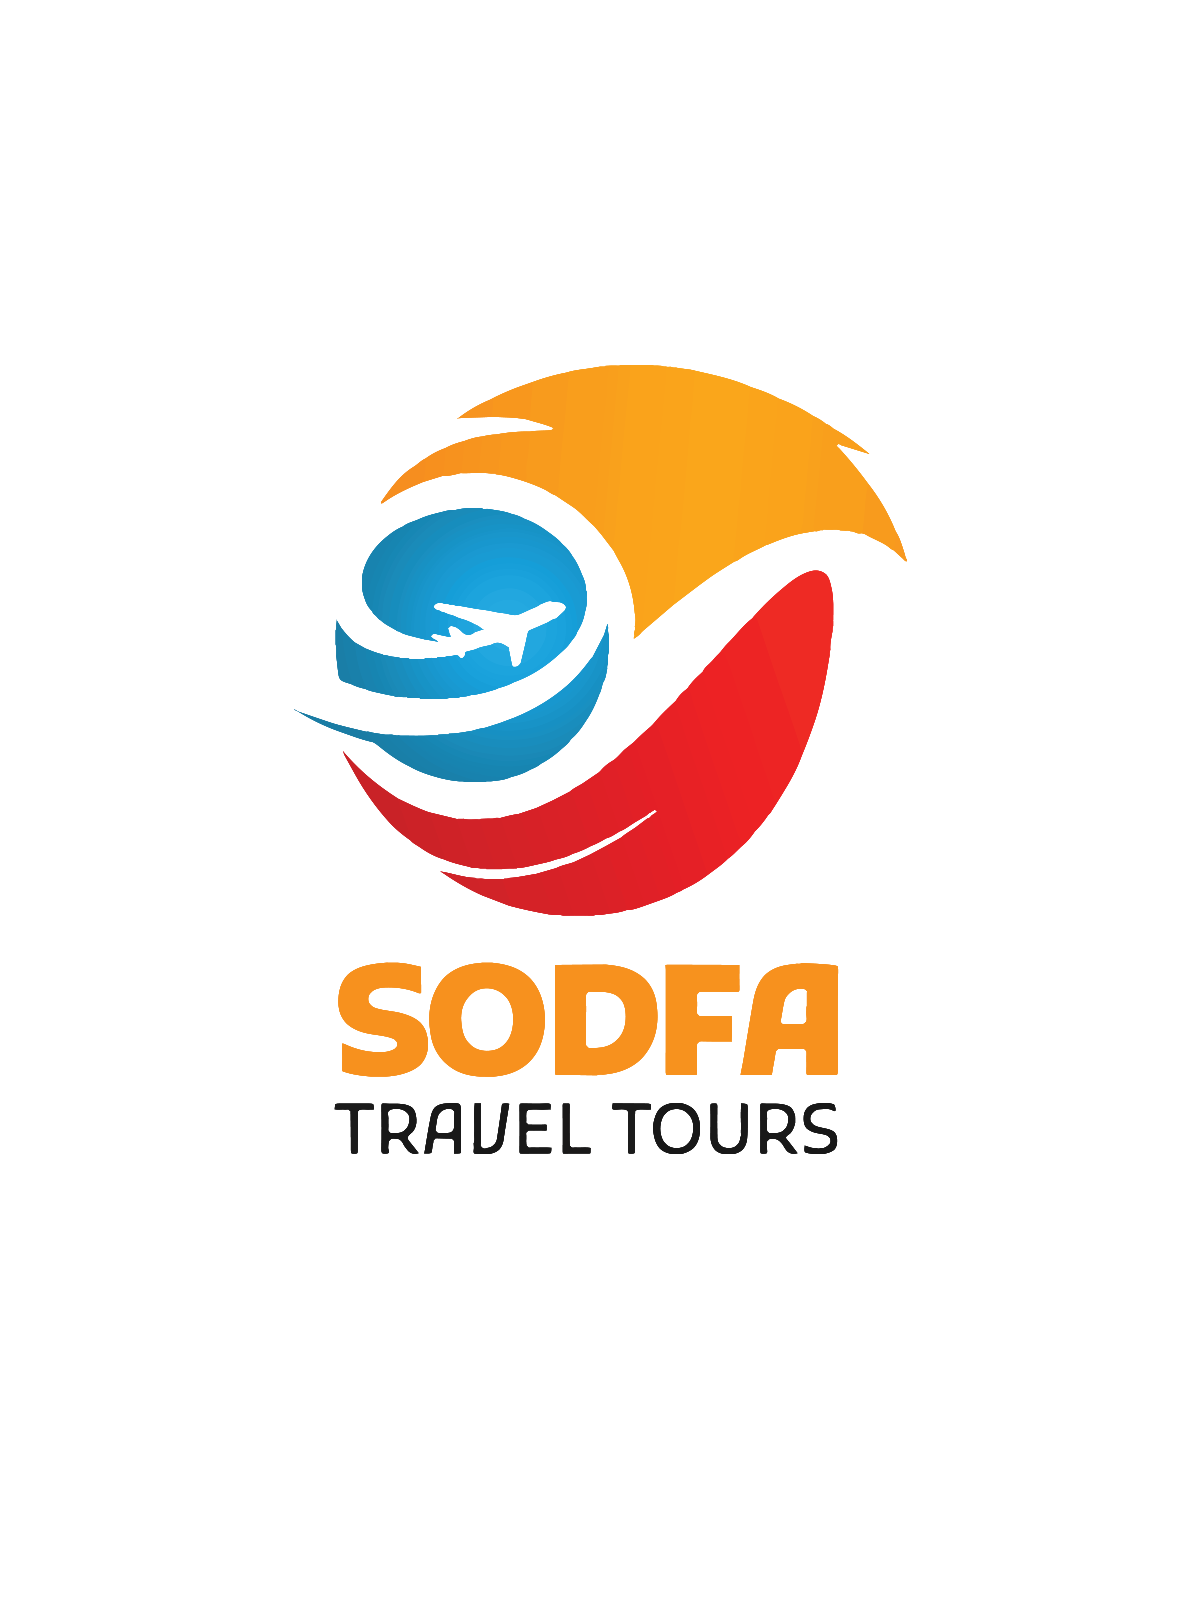 Sodfa Travel